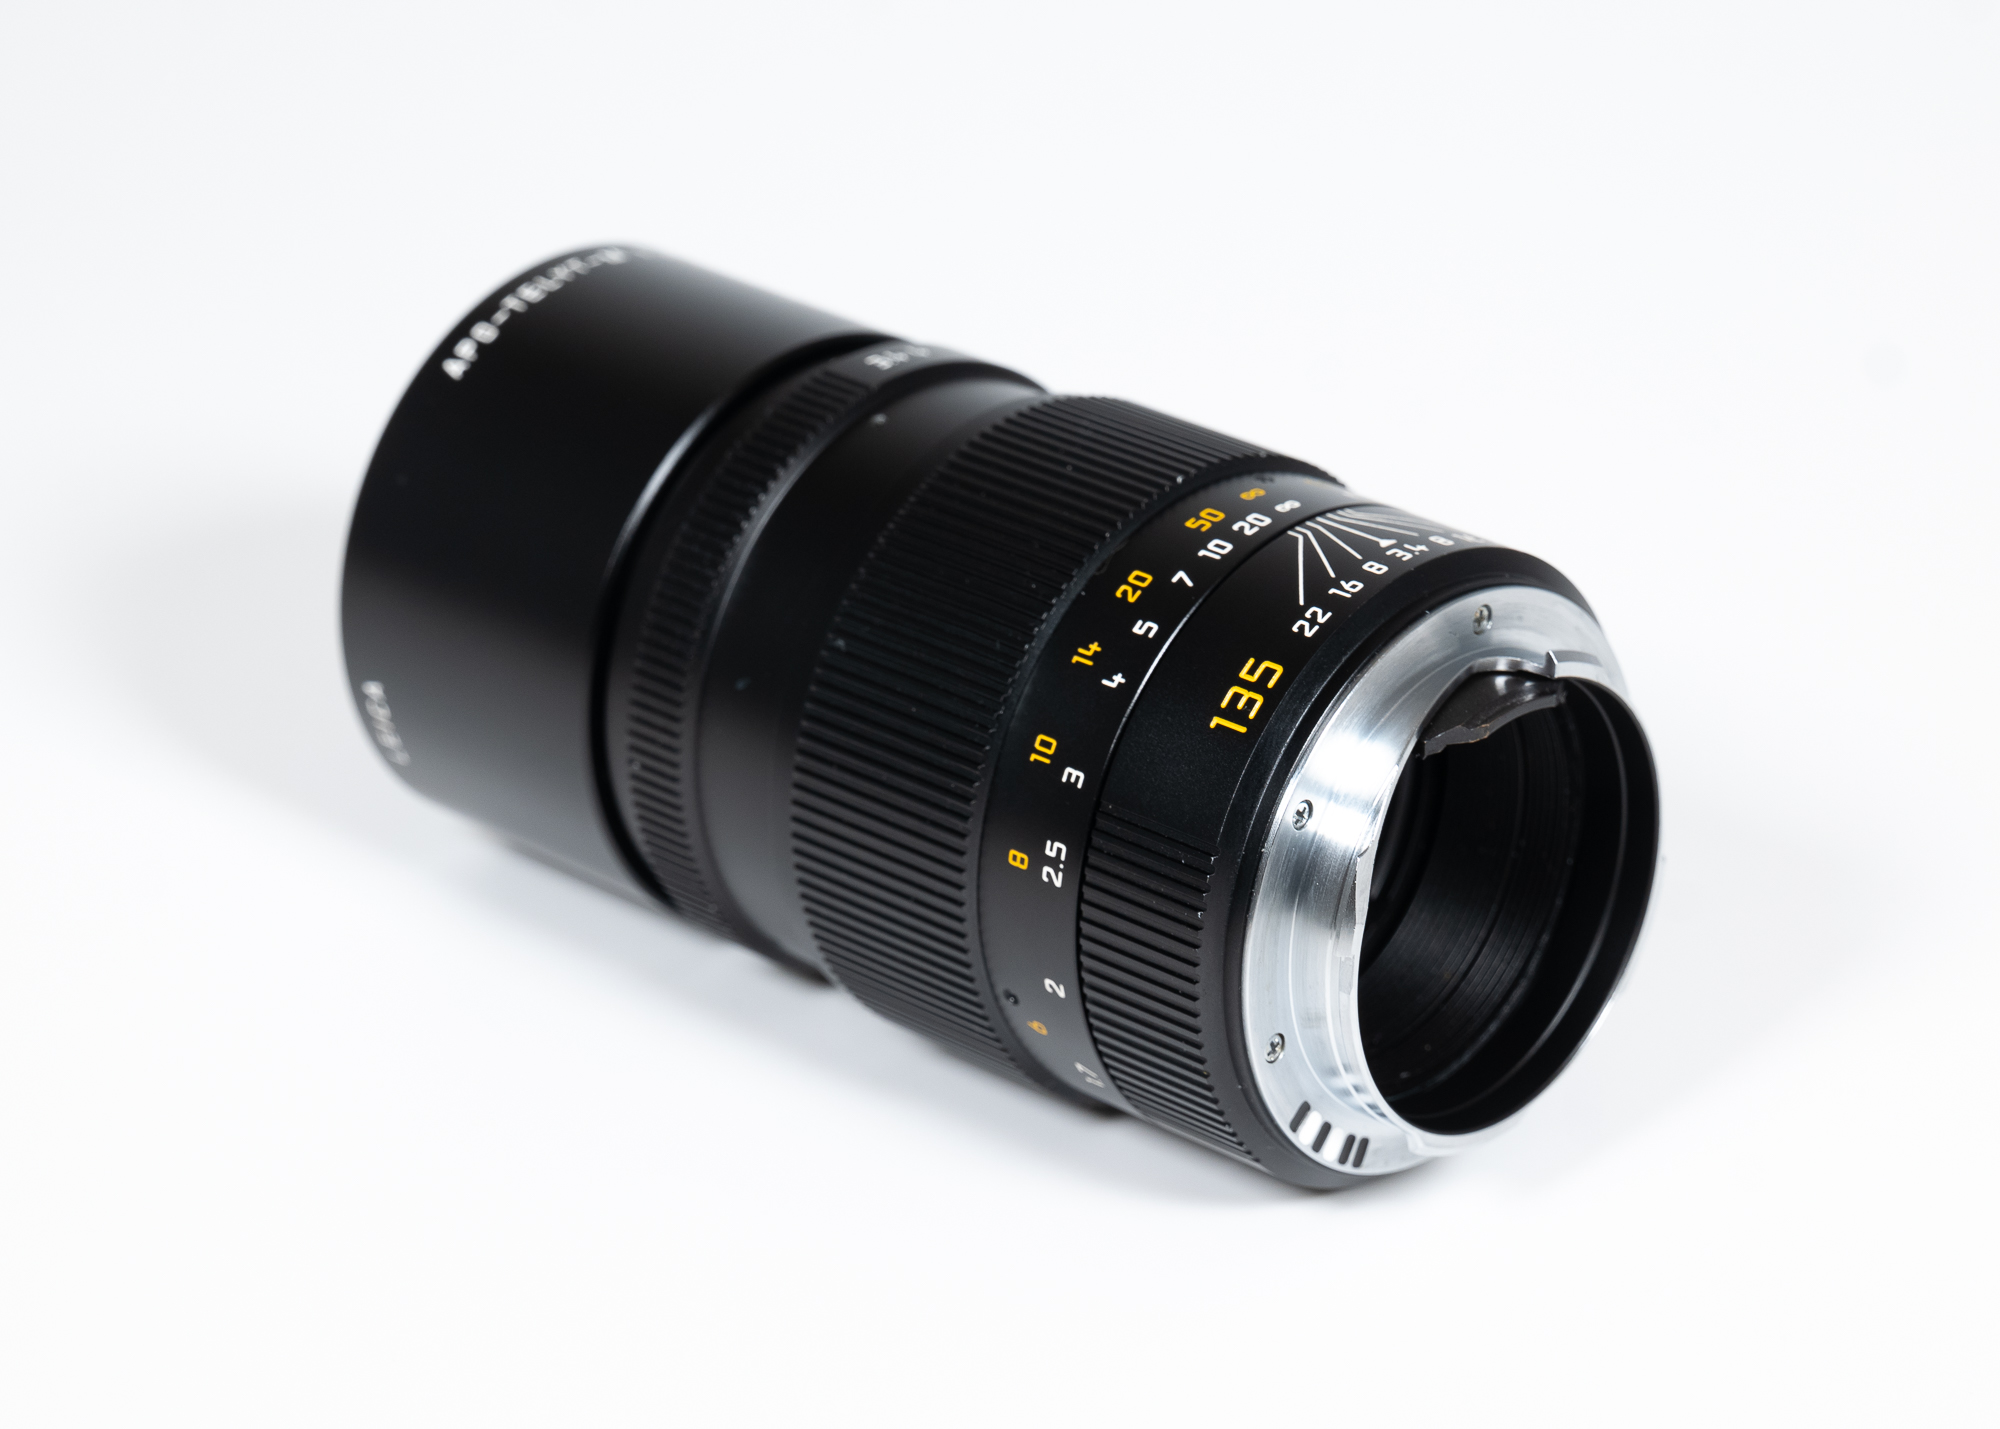 Leica APO-Telyt-M 1:3,4/135mm 